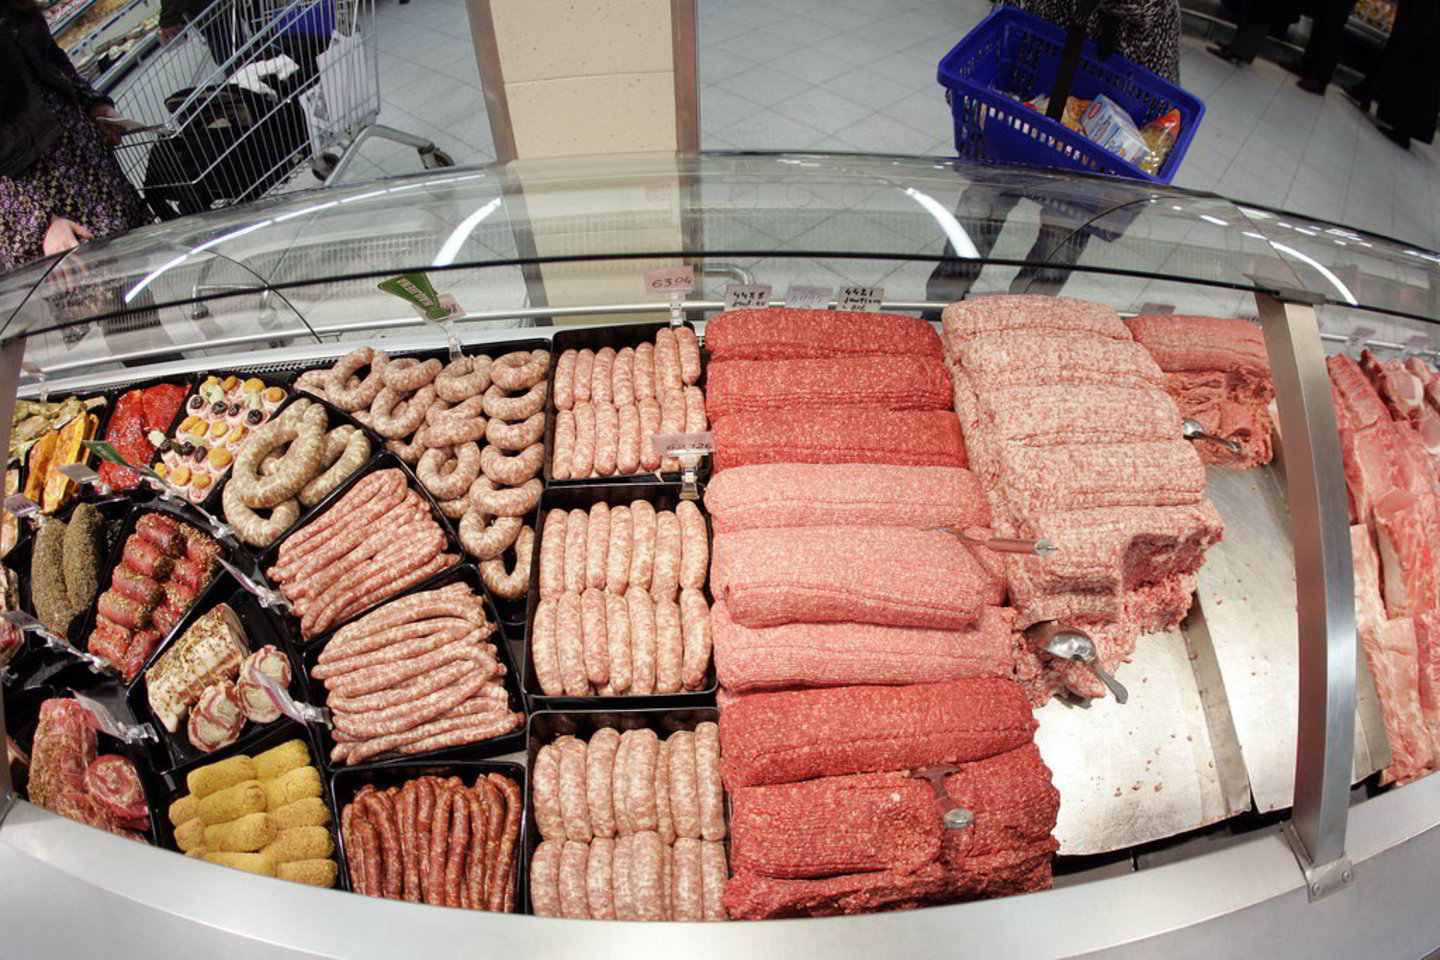 Anot Lietuvos prekybos įmonių asociacijos vykdančiojo direktoriaus Lauryno Vilimo, sustabdyti apsipirkimą kaimyninėje šalyje būtų galima sumažinus PVM mokestį šaldytai mėsai iki 5 proc.<br>V. Balkūnas